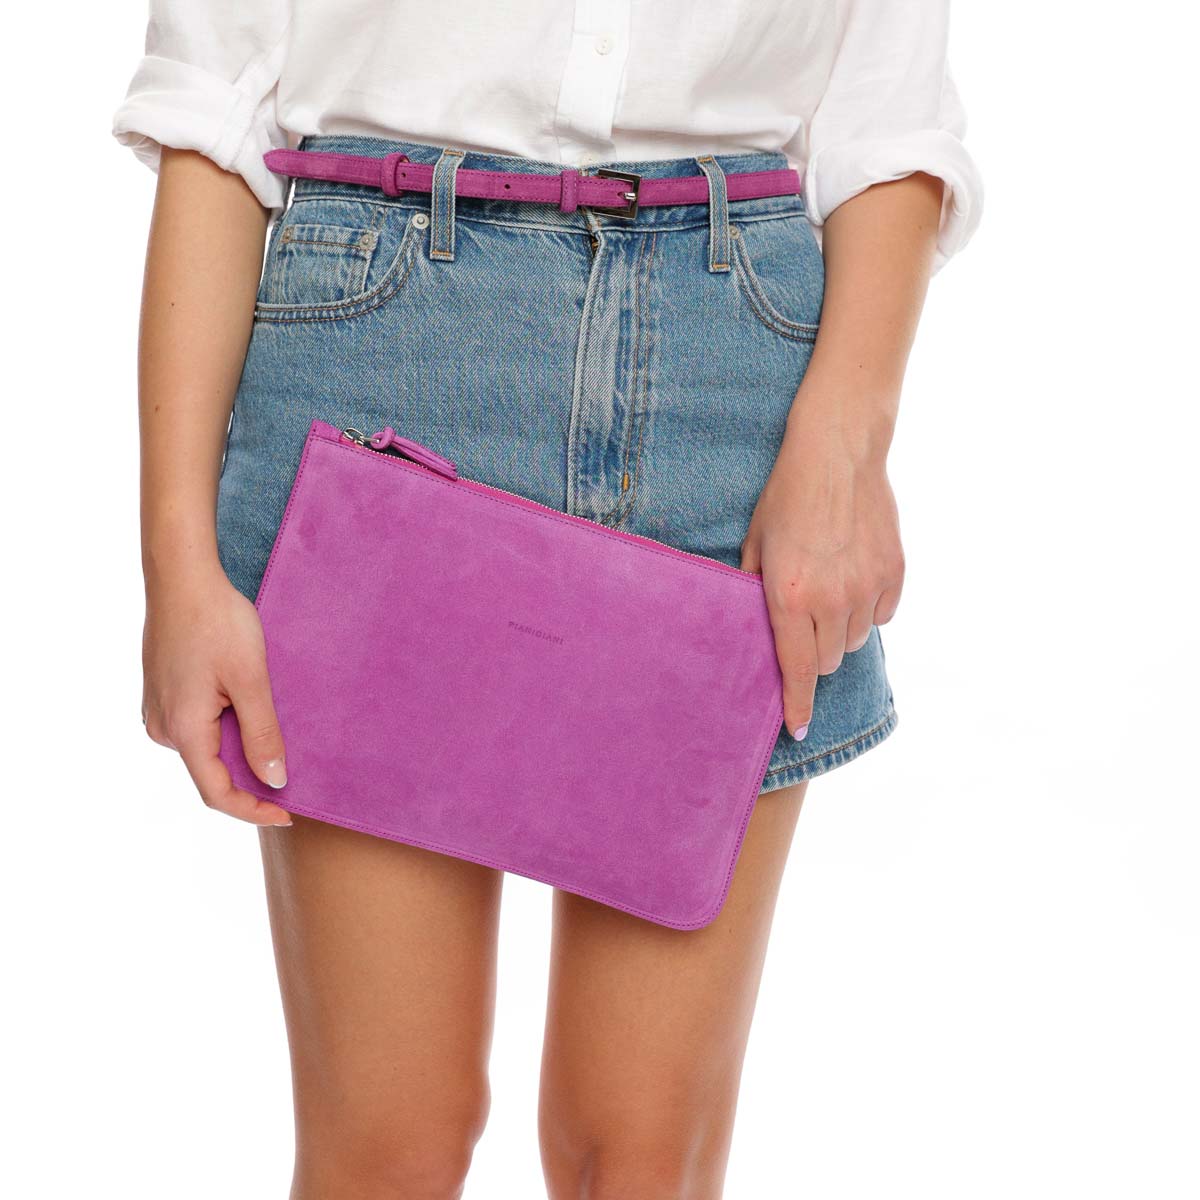 Rose, borsa modello bustina con polsino in pelle scamosciata viola, prodotta da Pianigiani.